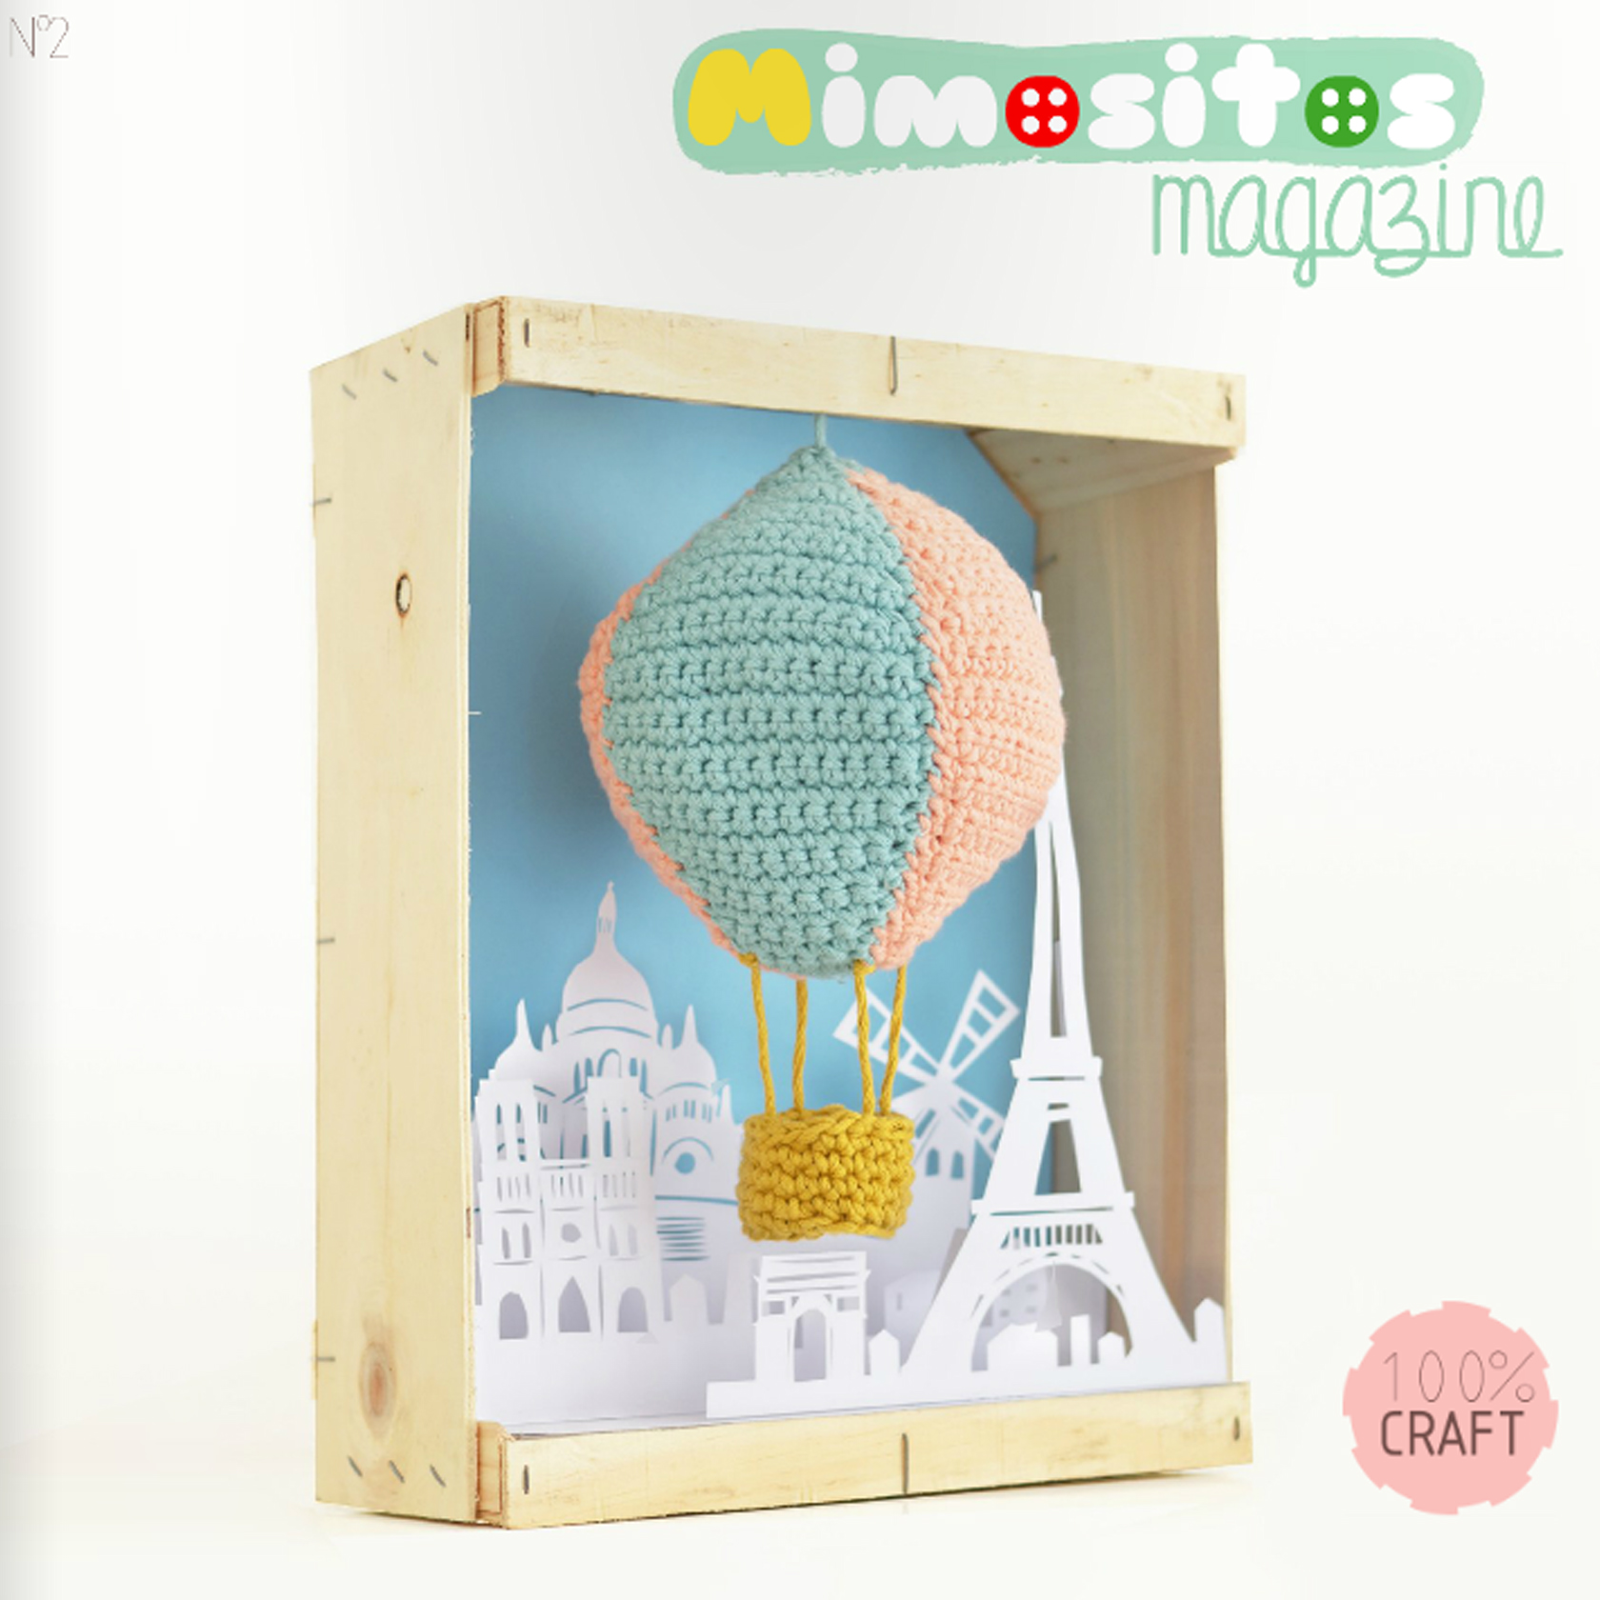 portada revista online craft Mimositos magazine N2 DIY handmade online magazine free